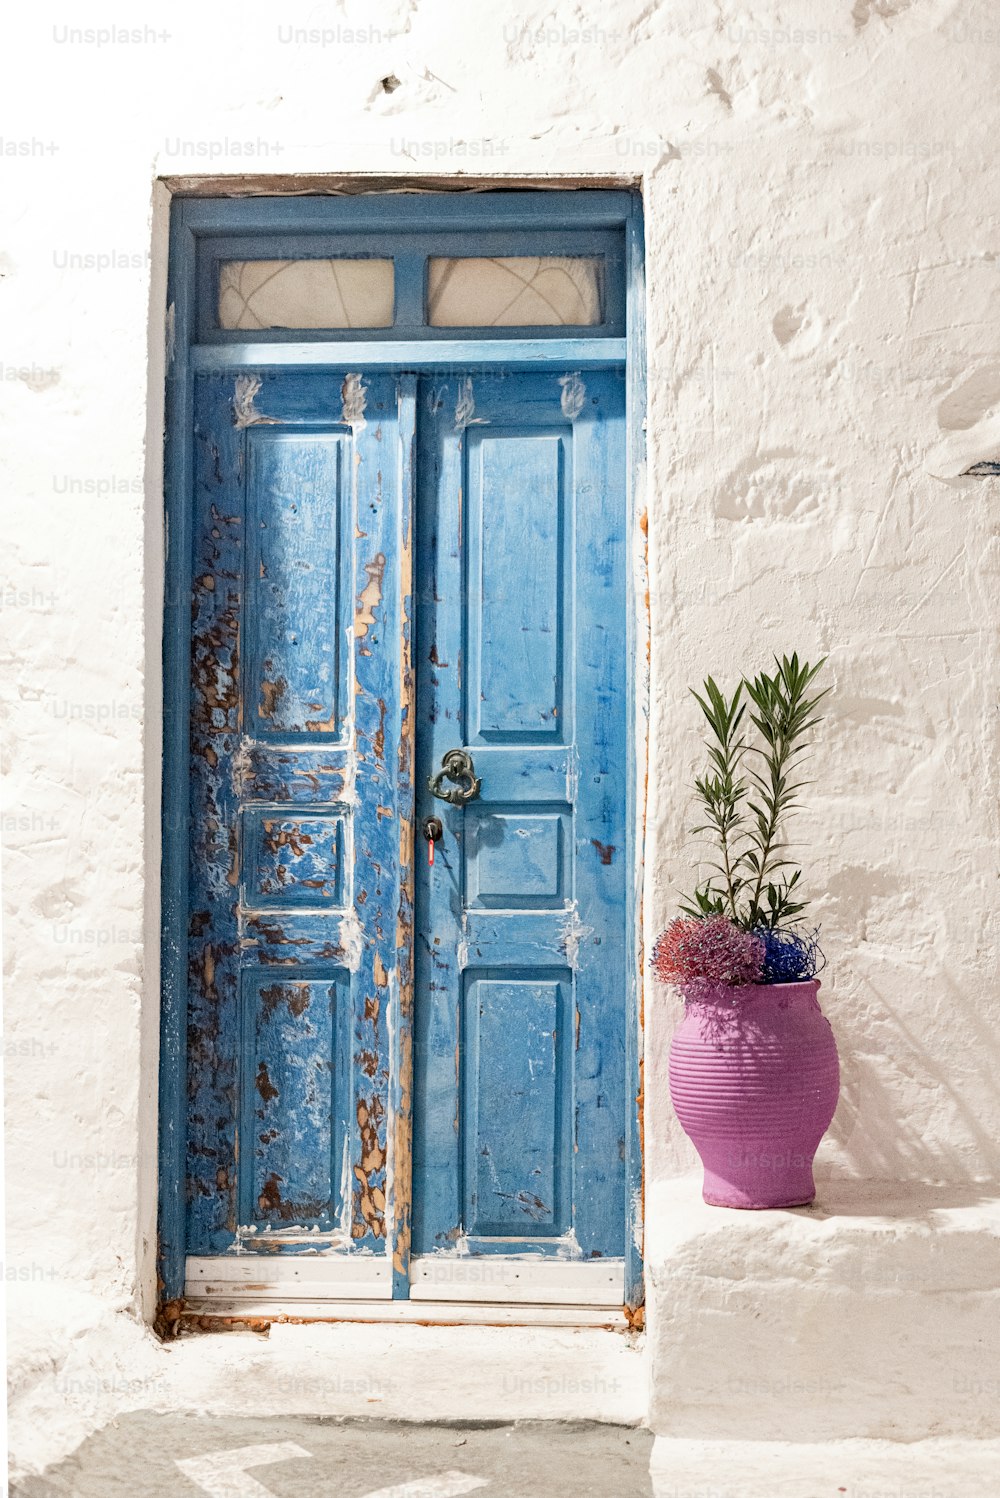 Eine blaue Tür und eine lila Topfpflanze davor